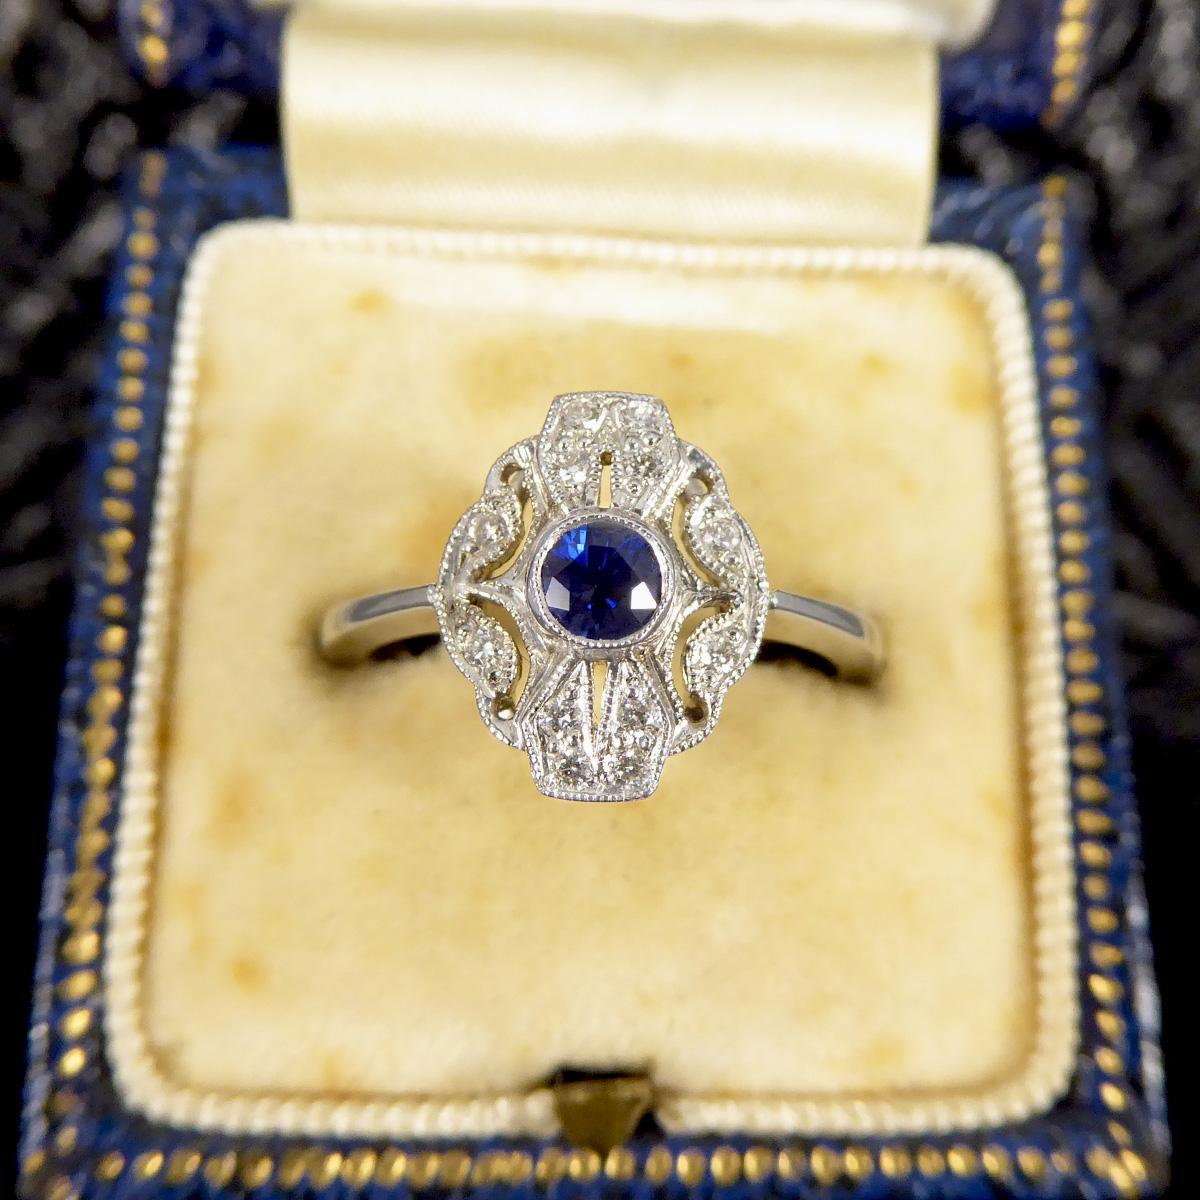 Premium Period Art Deco Replica Sapphire & Diamond Plaque Ring 18ct White Gold For Sale 3